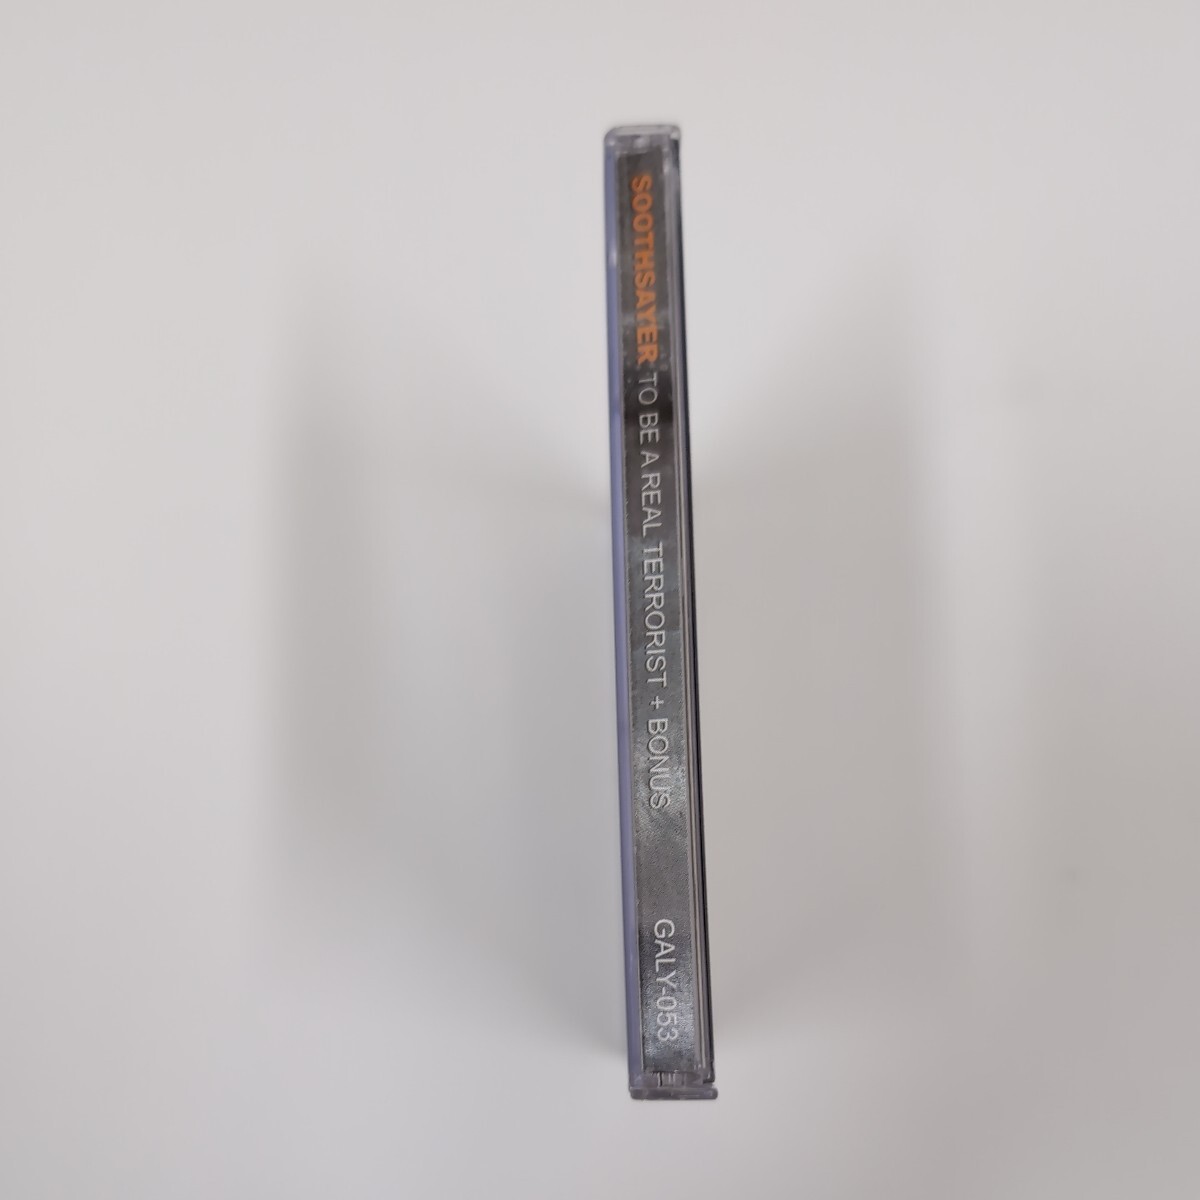 SOOTHSAYER Canada Thrash Heavy Metal スラッシュメタル ヘヴィメタル 輸入盤CD コンピレーションの画像7